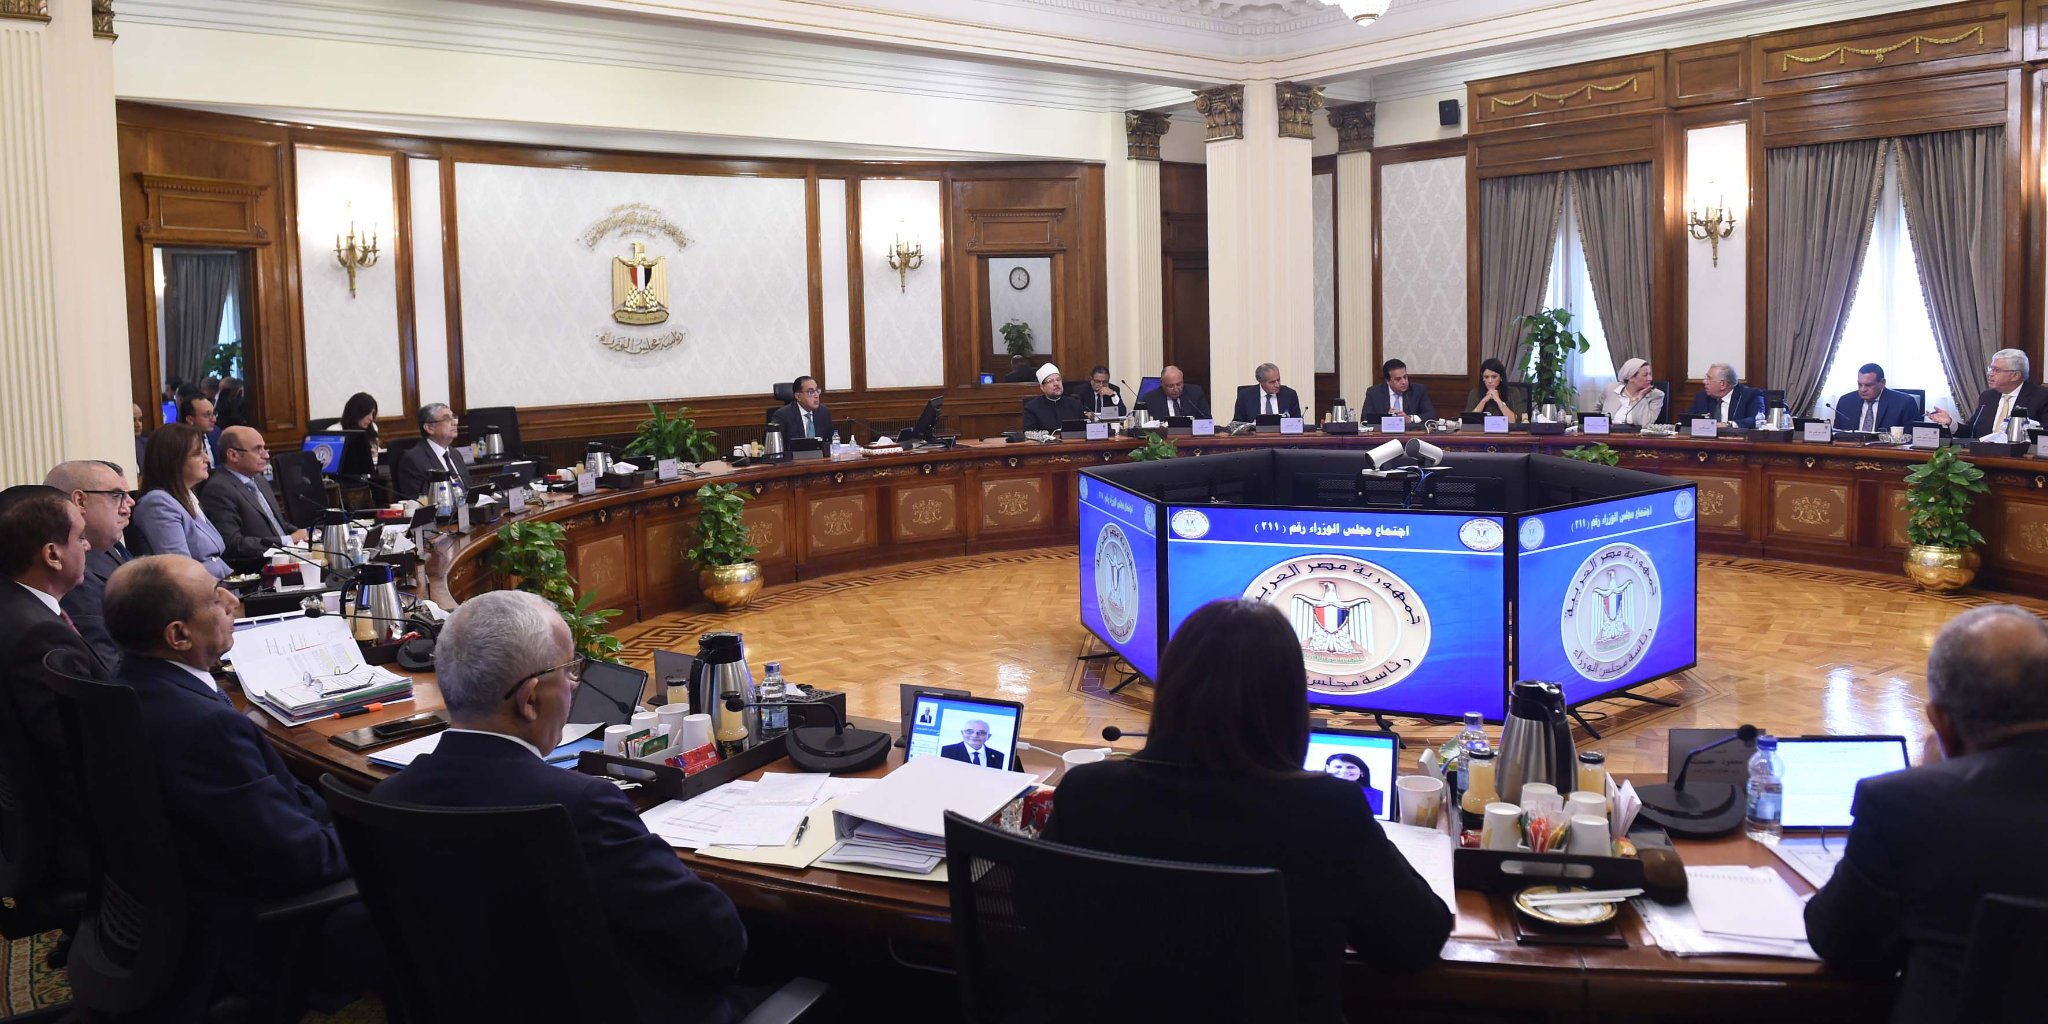 الحكومة توافق على اتفاق مع الوكالة الفرنسية لتمويل مشروع إنشاء مترو إسكندرية/ أبو قير